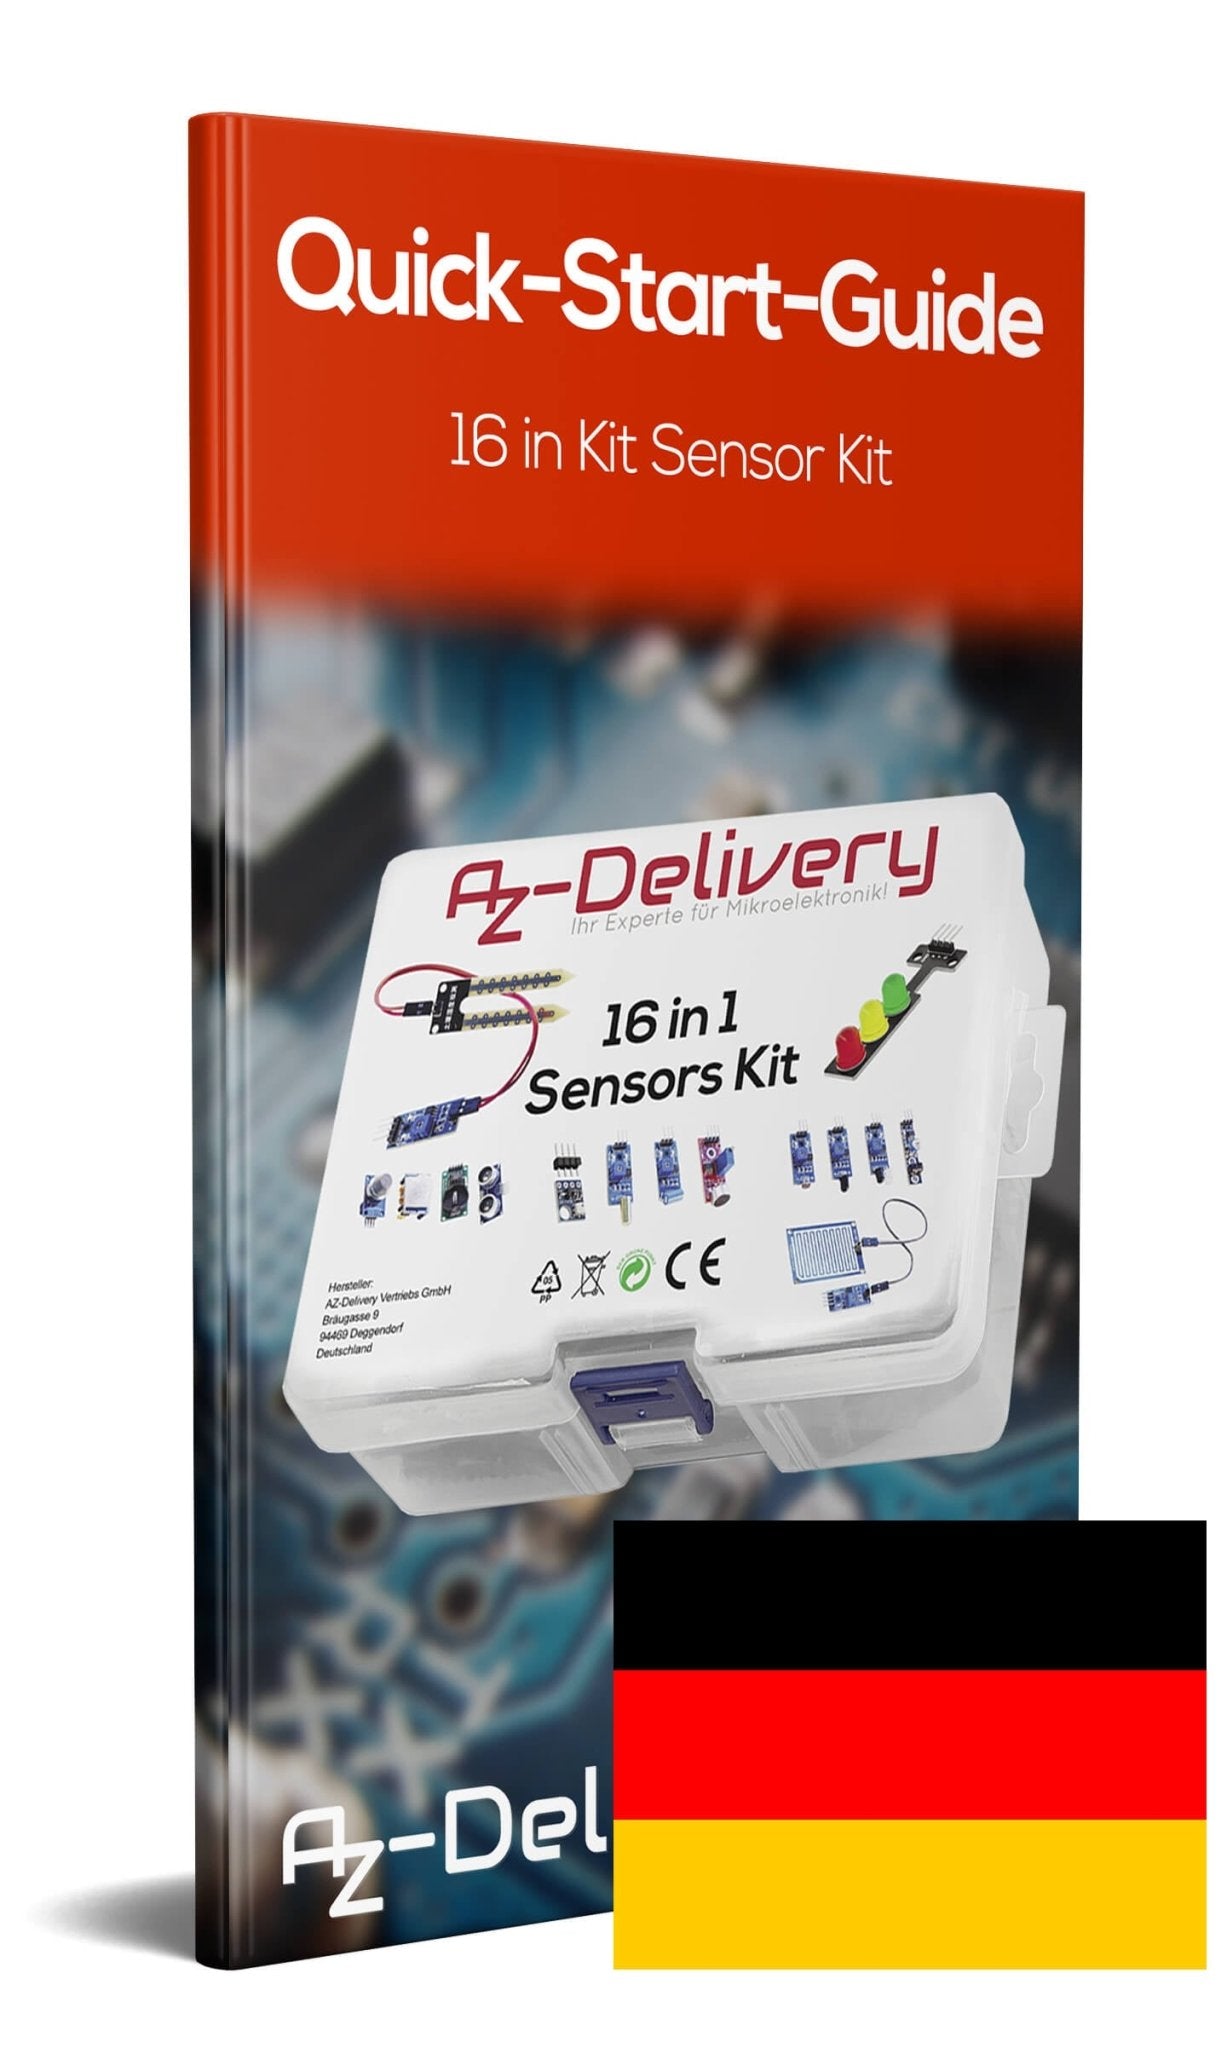 Kit 16 in 1 - set di accessori per Raspberry Pi / Arduino